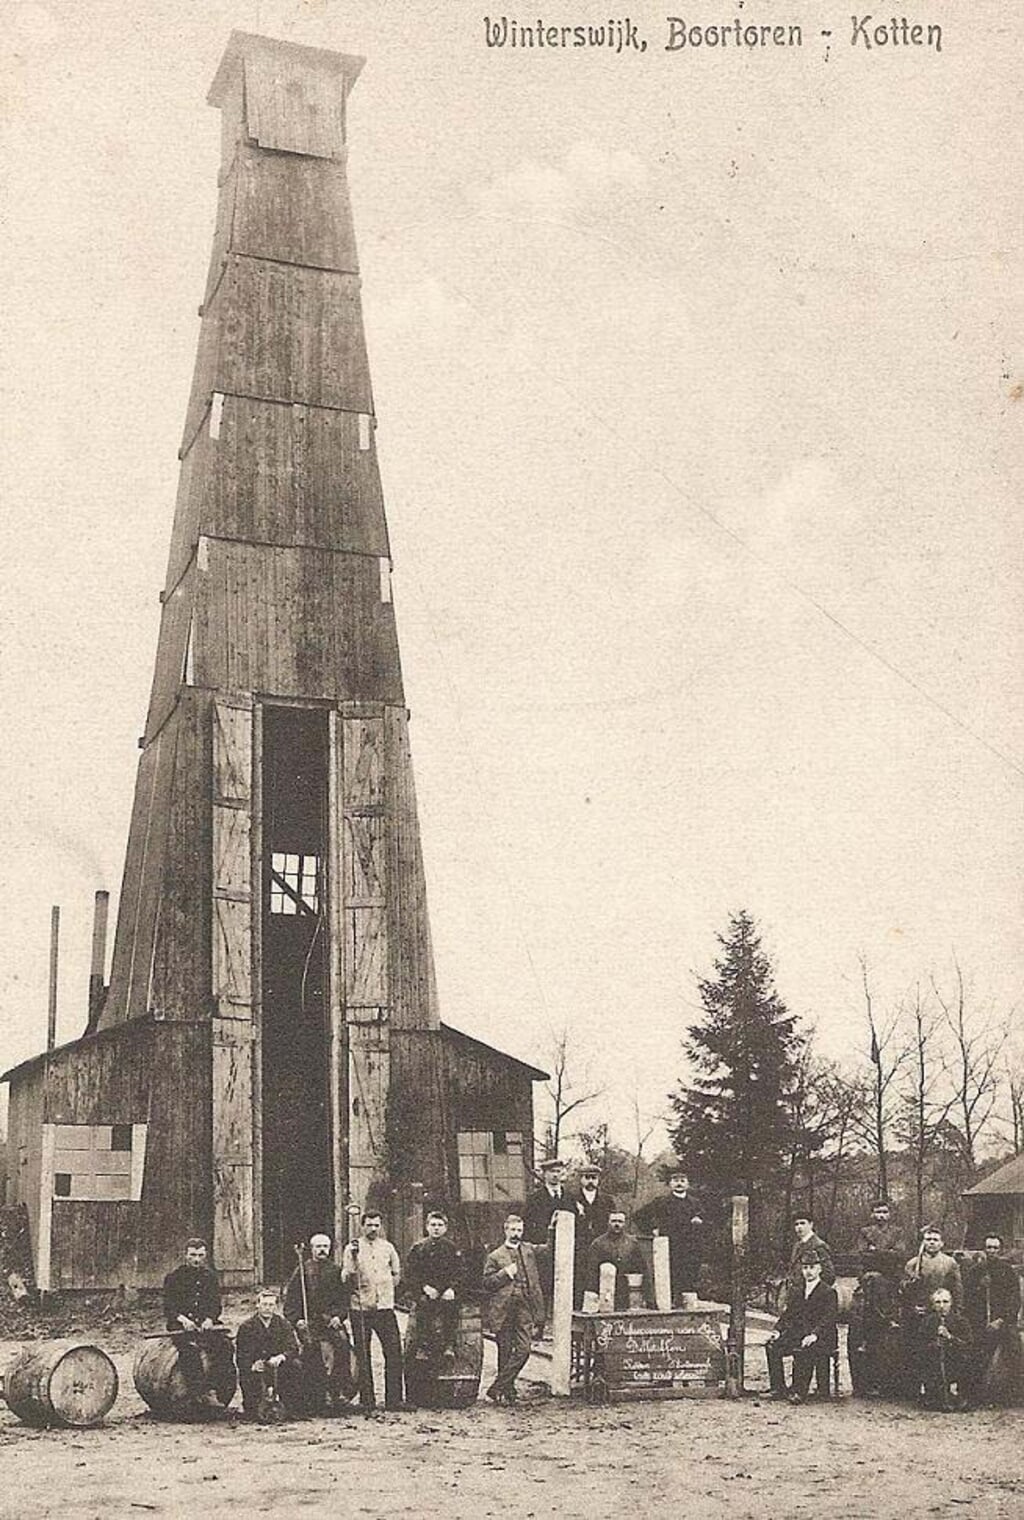 Winterswijk, boortoren - Kotten. Bron: Utrechts Nieuwsblad, 1909